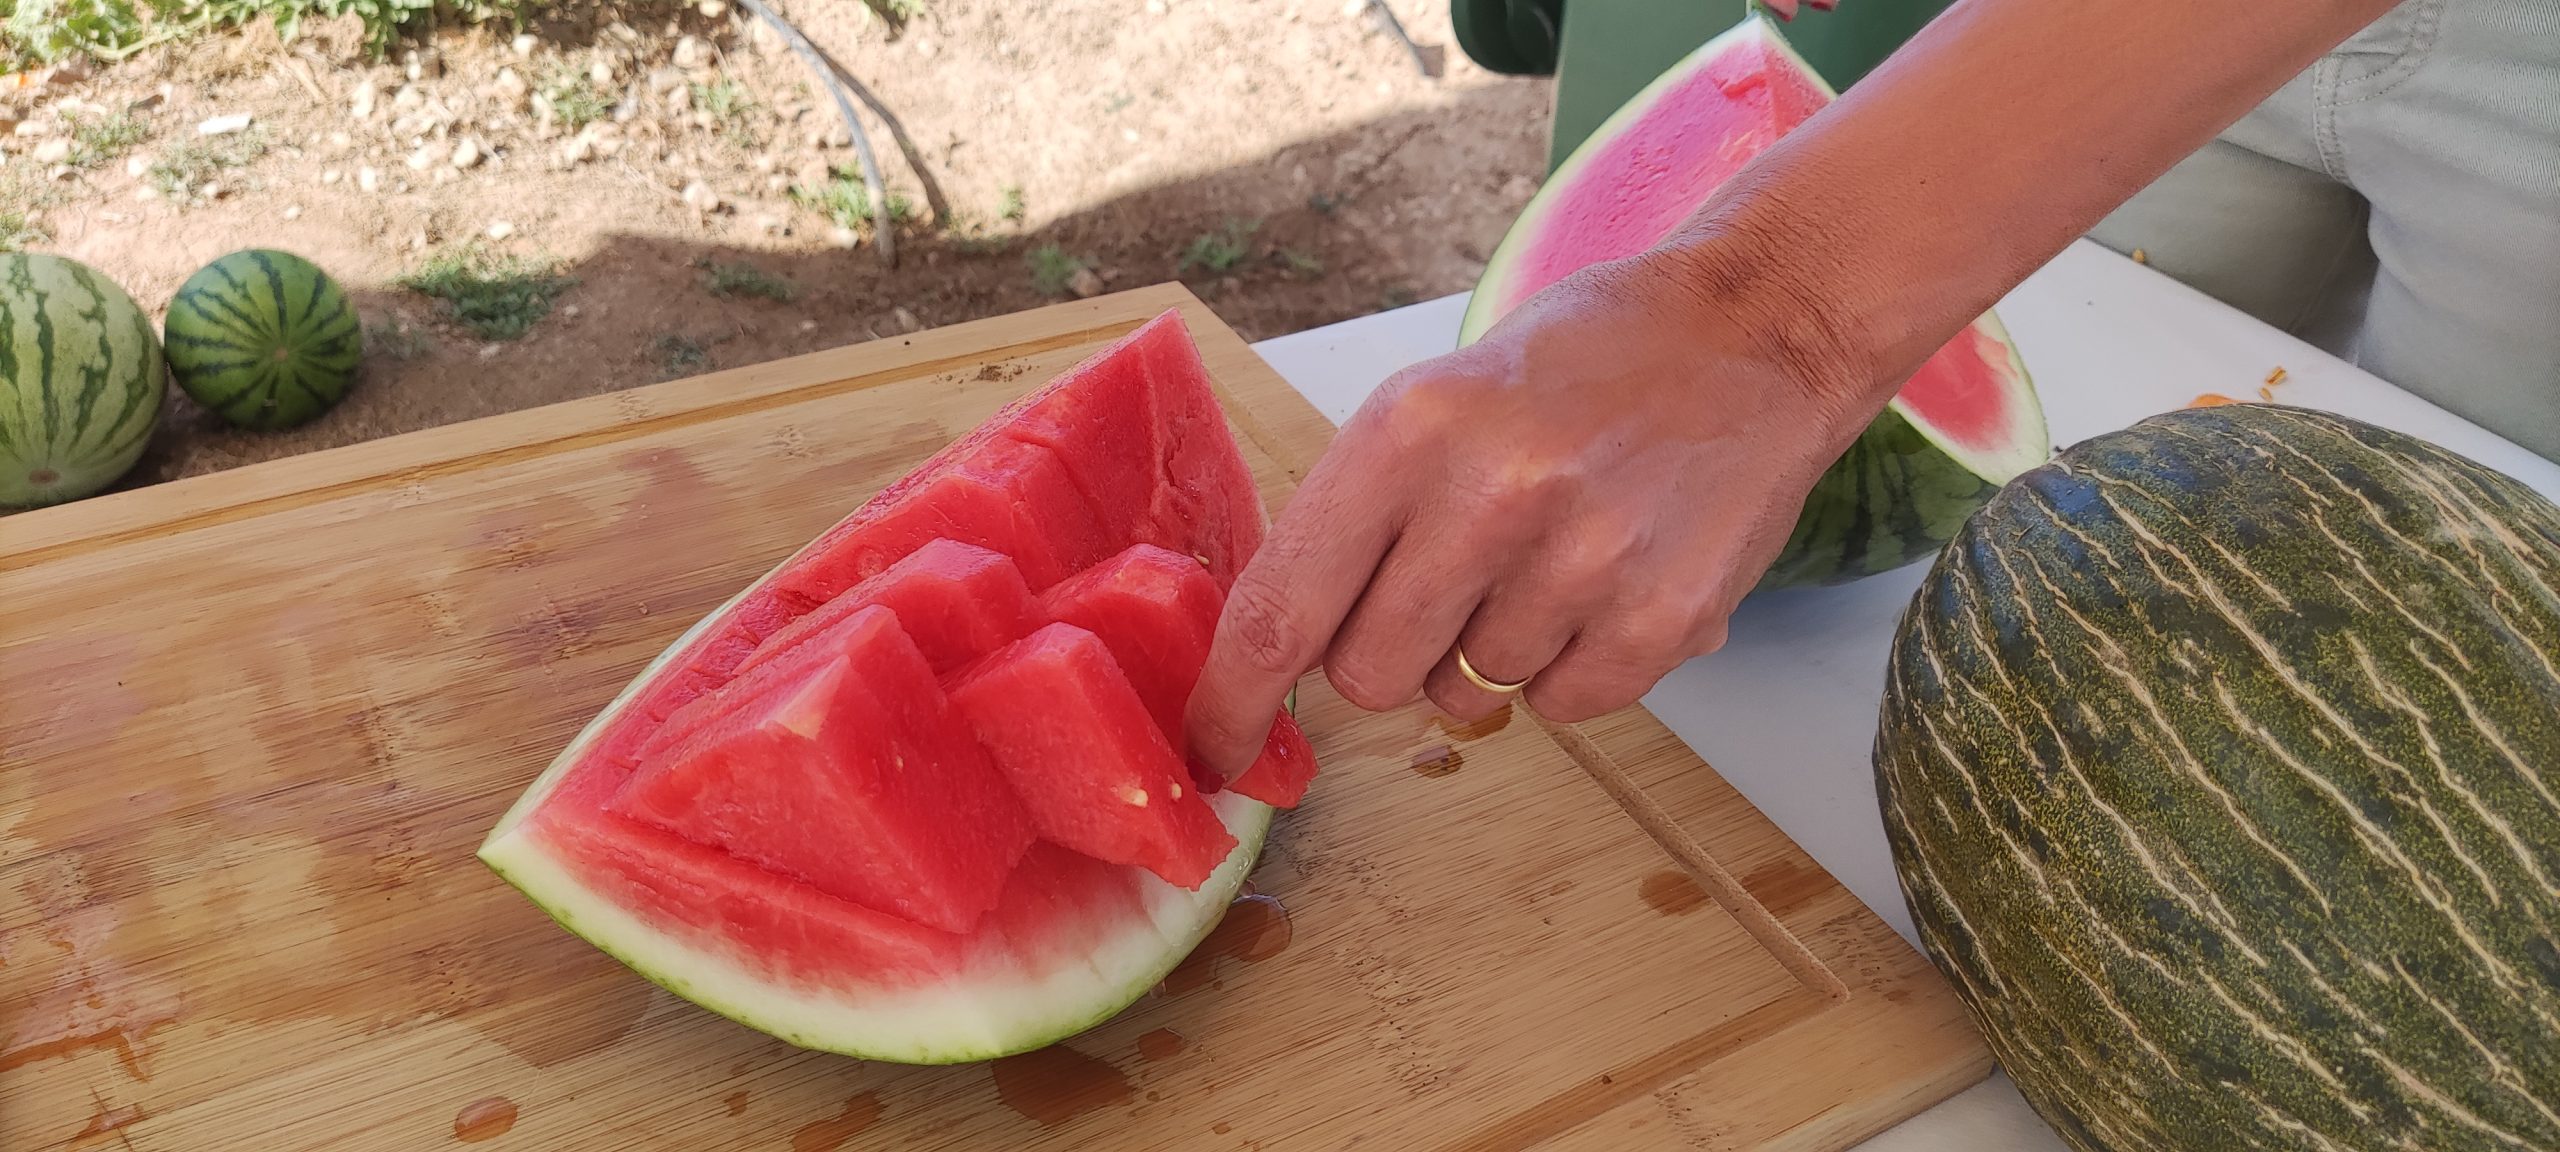 Los productores españoles de melón y sandía celebran la recuperación de la normalidad